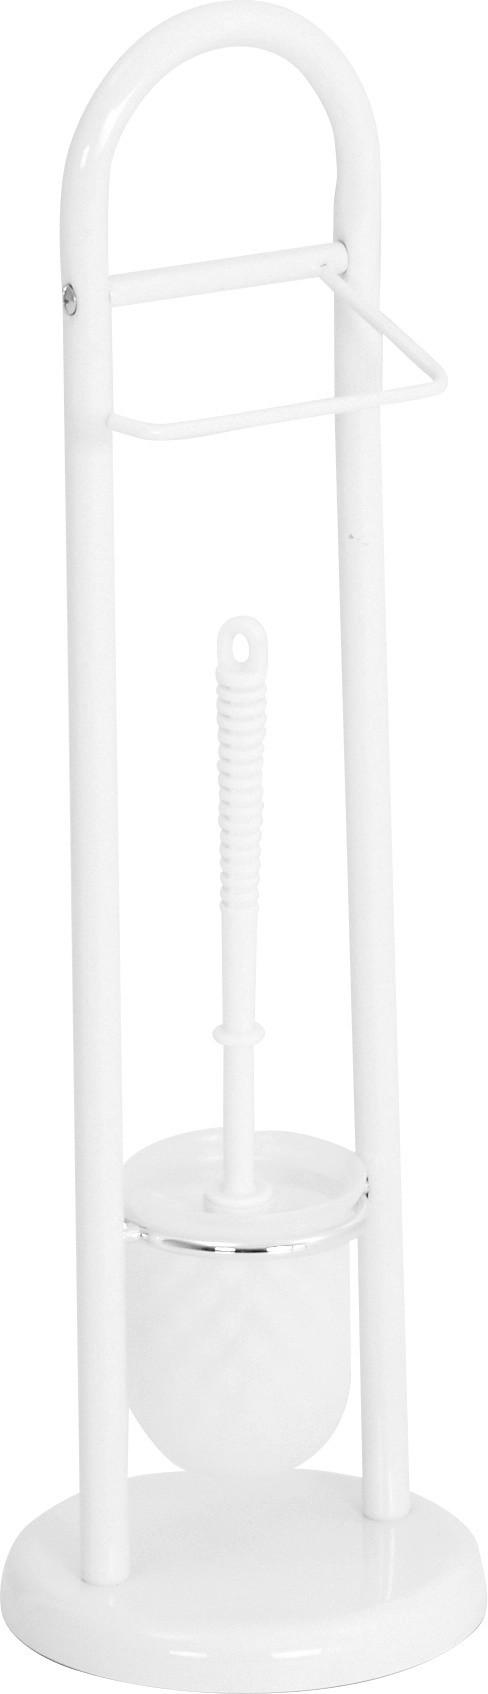 WC SADA - ŠTĚTKA A DRŽÁK - bílá, Design, plast (19/63cm)